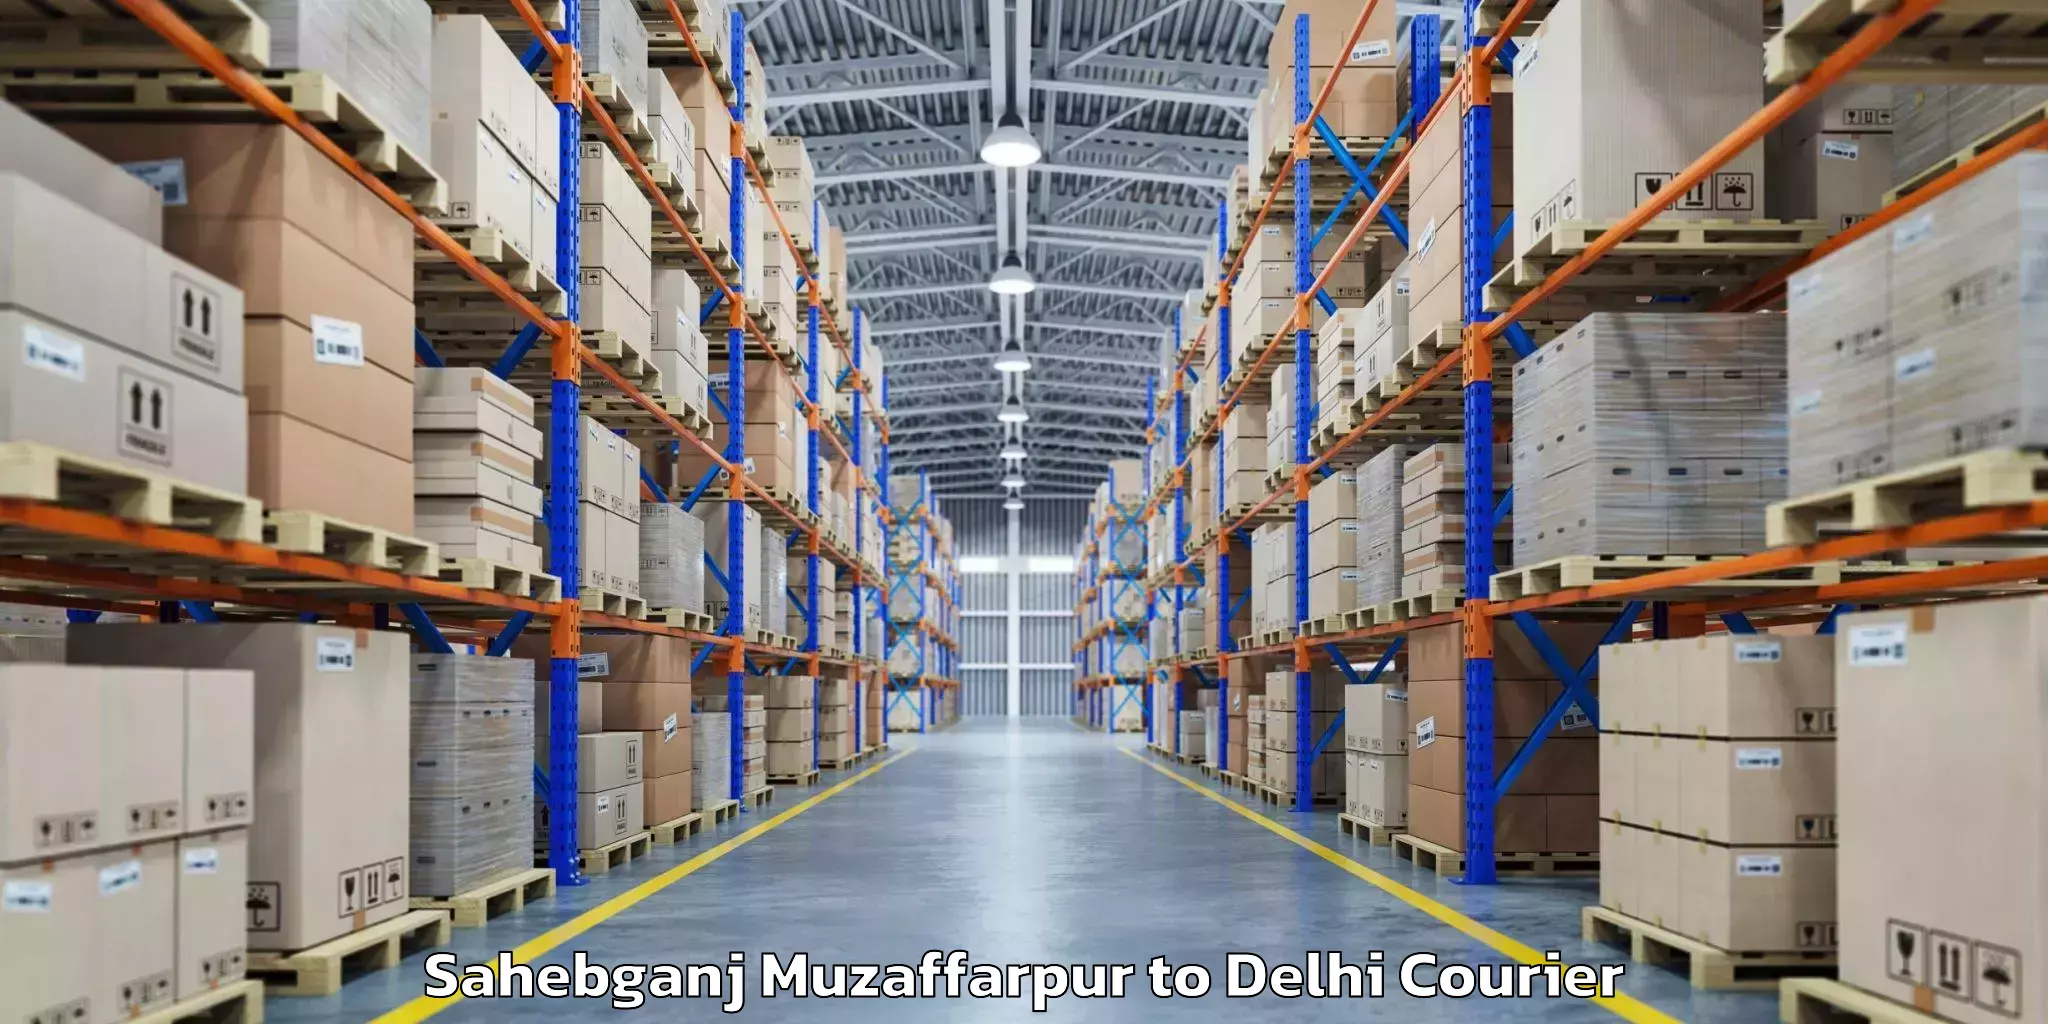 Luggage transport consultancy Sahebganj Muzaffarpur to Sarojini Nagar